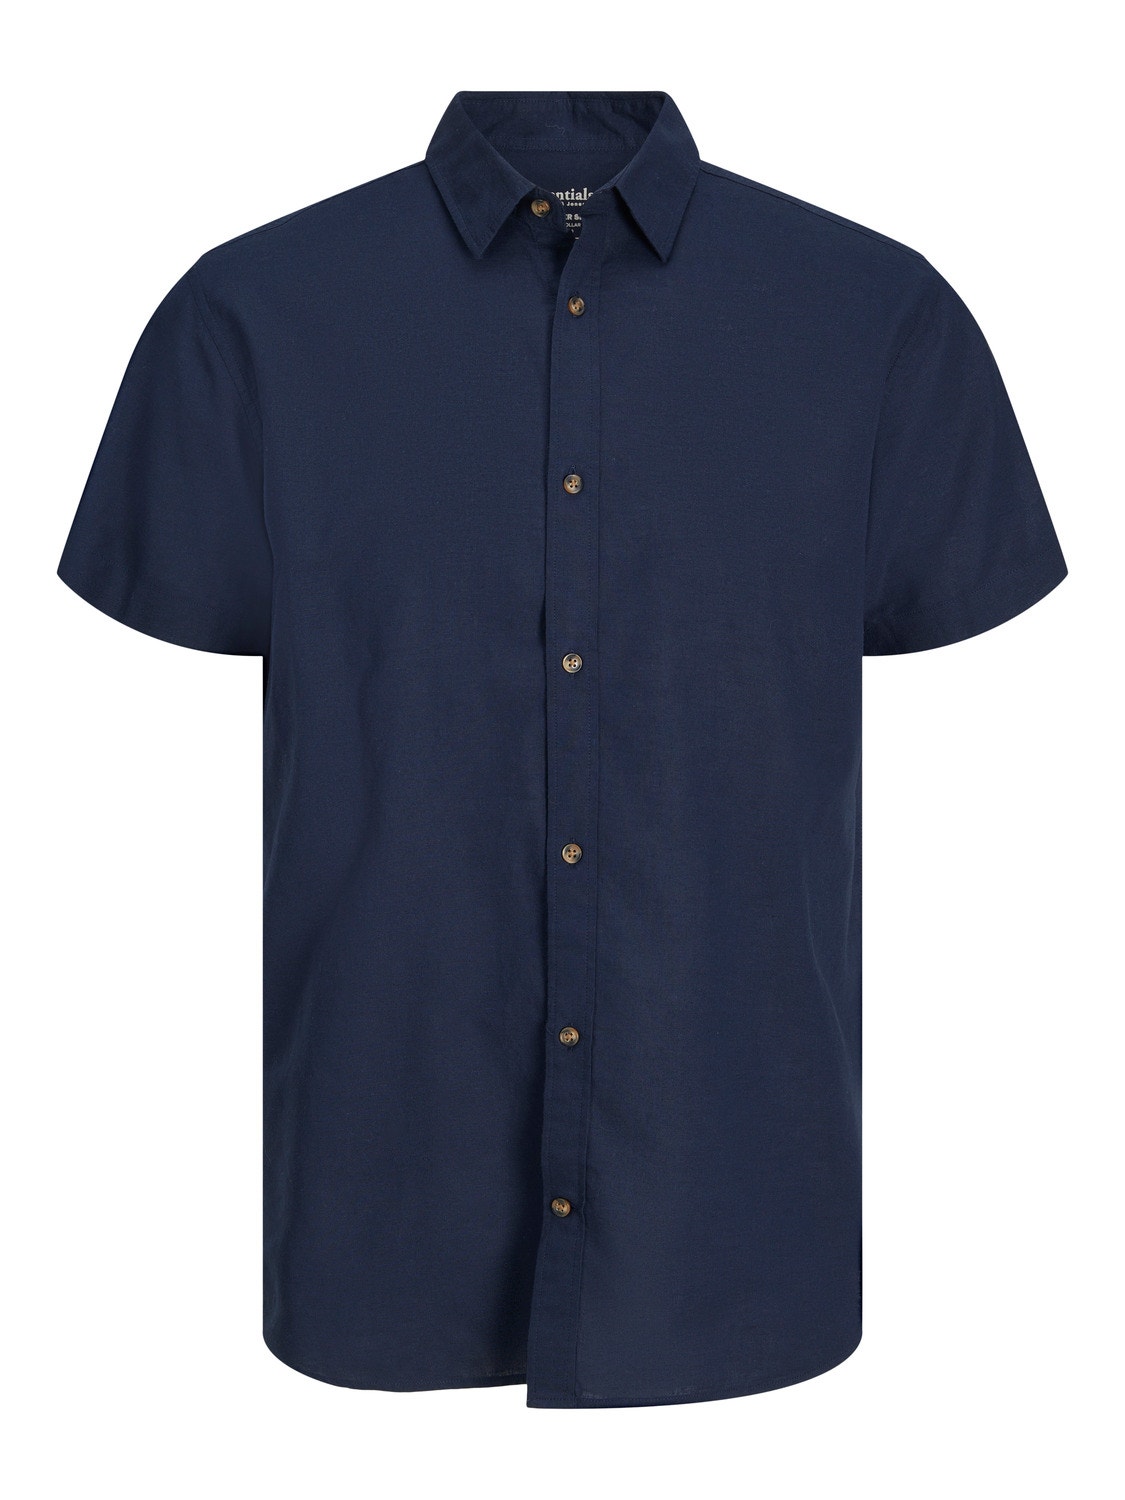 Jack & Jones Comfort Fit Shirt -Navy Blazer - 12248383